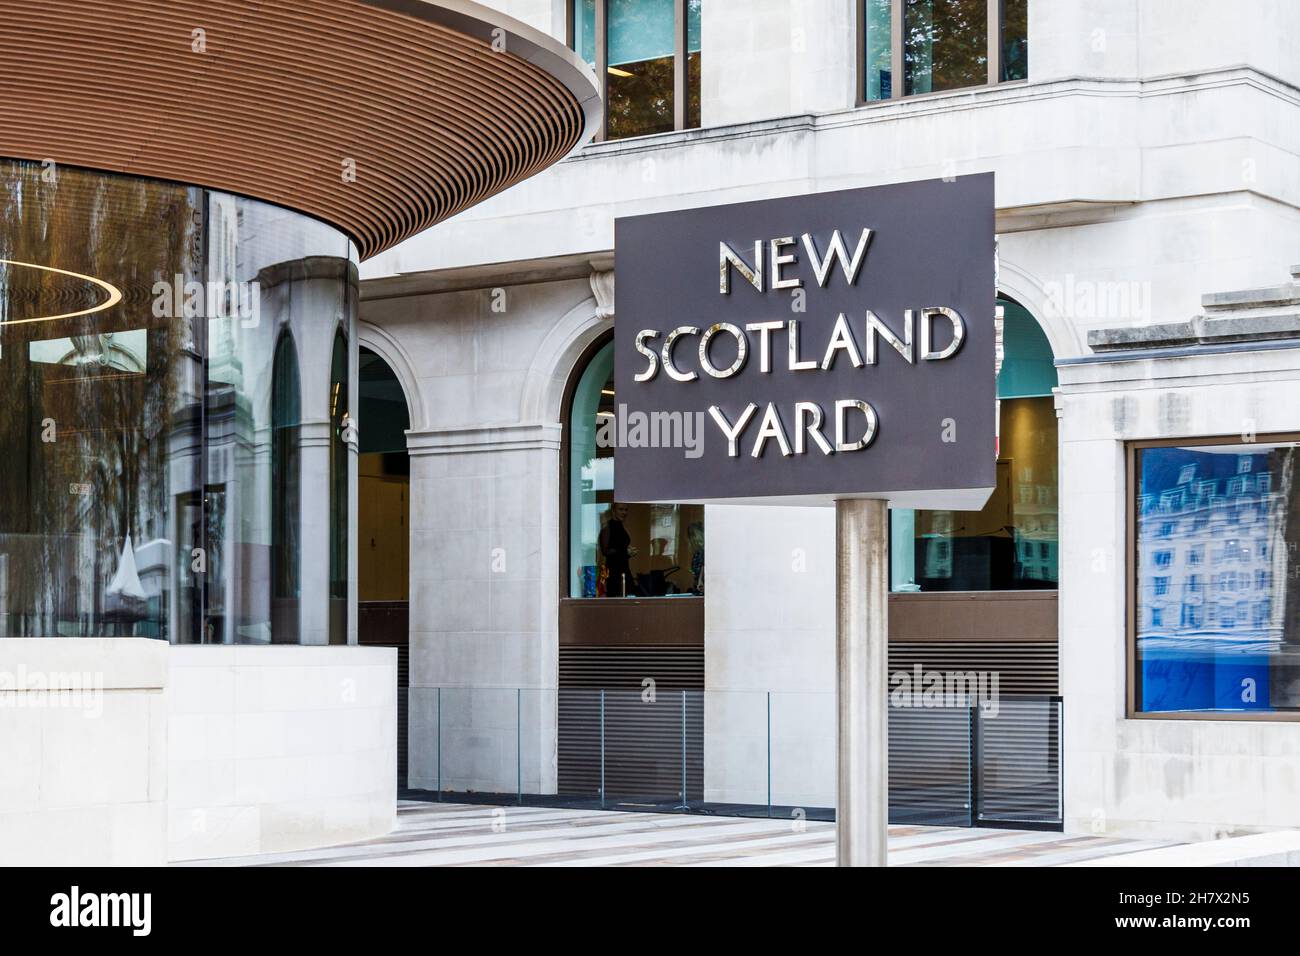 Das ikonische Drehschild vor dem New Scotland Yard, dem Hauptsitz der Metropolitan Police, Victoria Embankment, London, Großbritannien Stockfoto